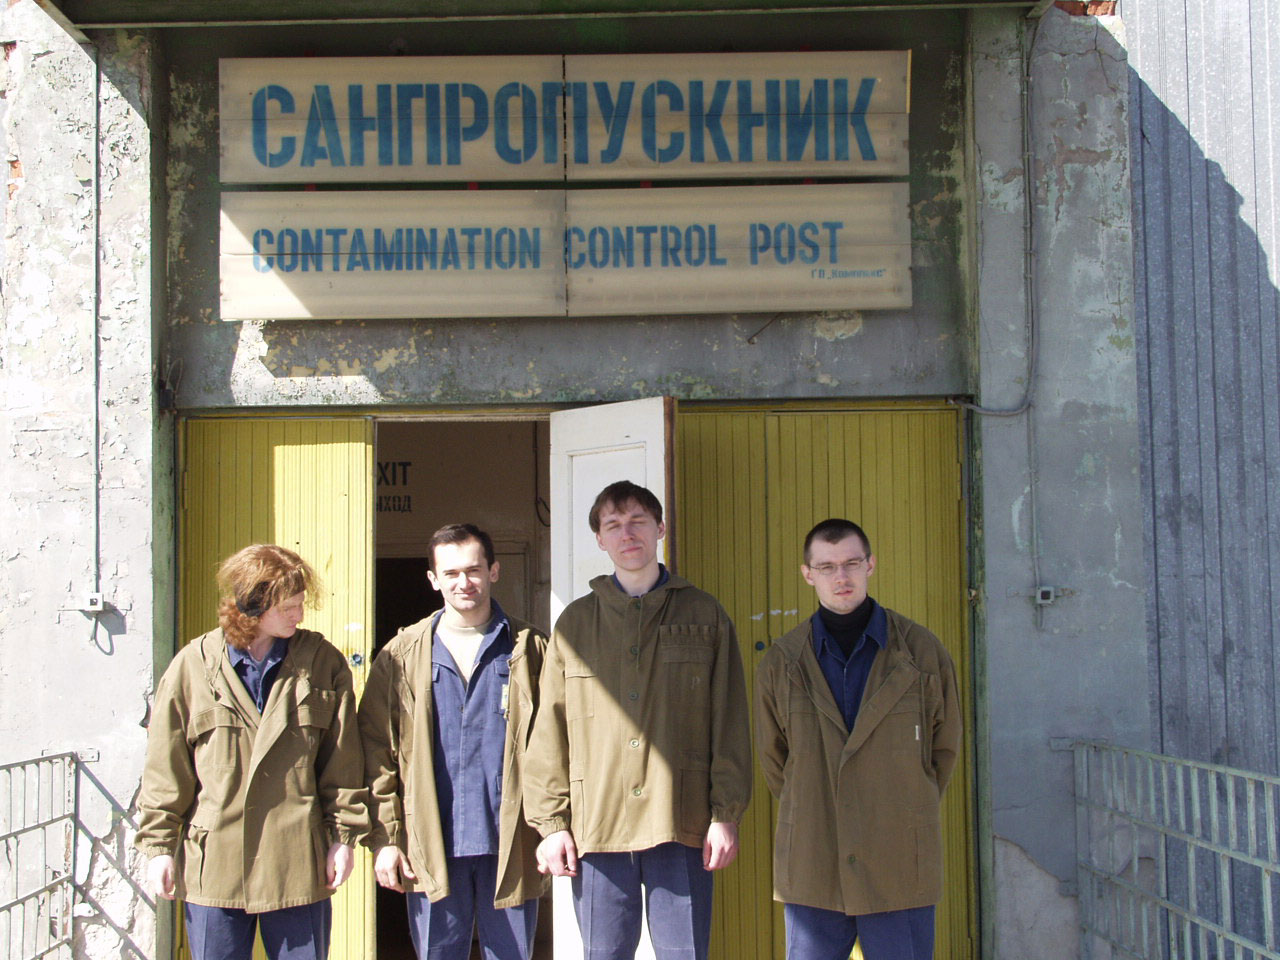 GSC Game World in Chernobyl. S.T.A.L.K.E.R. devs notes, 2002 image 51